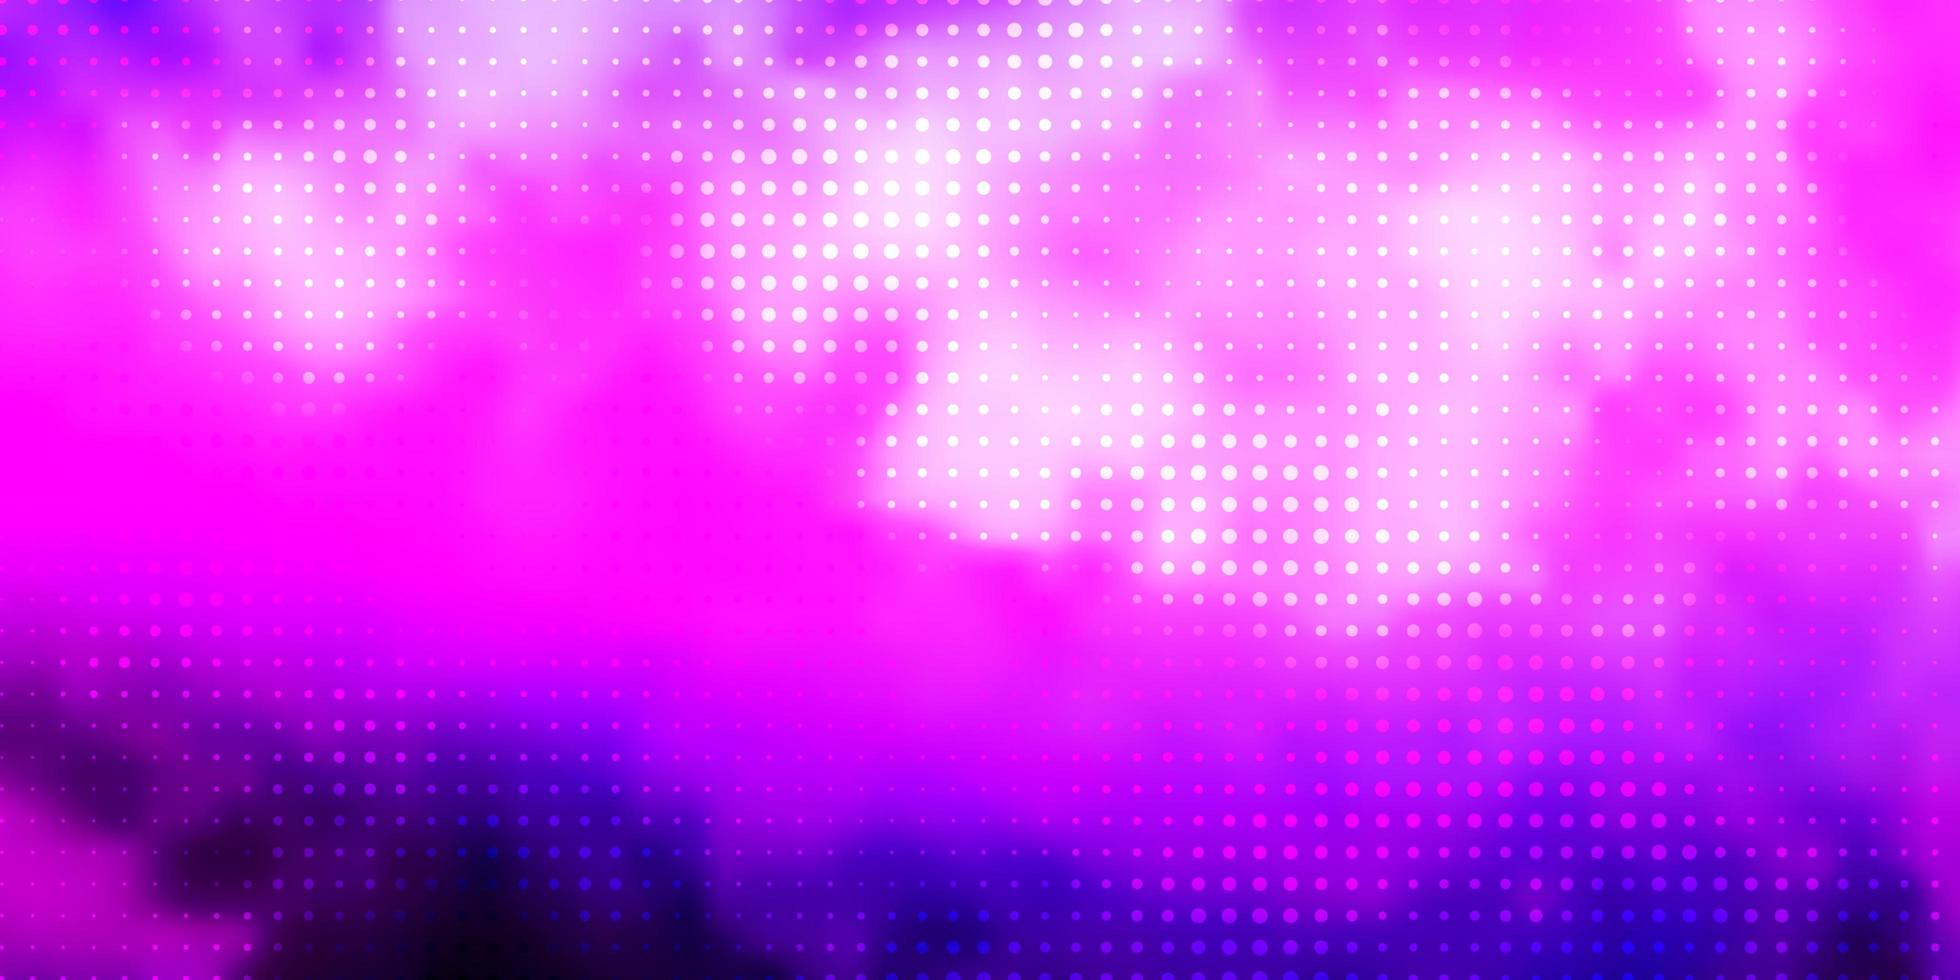 Fondo de vector azul rosa claro con burbujas ilustración abstracta con manchas de colores en estilo de la naturaleza nueva plantilla para un libro de marca